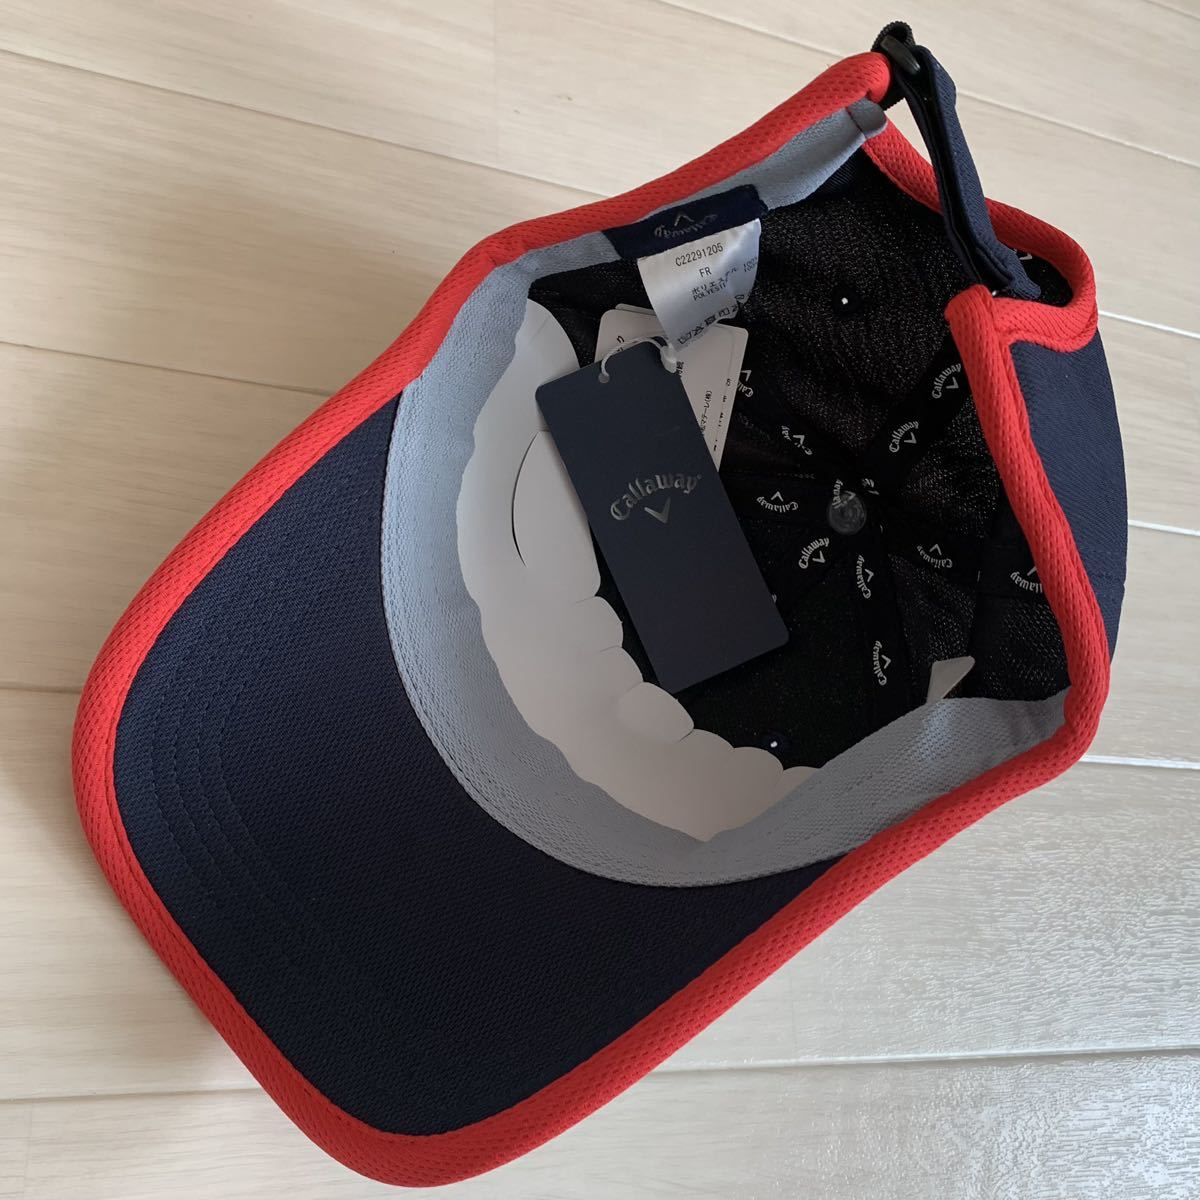  новый товар #5,720 иен [ Callaway Golf ] женский маска есть колпак шляпа темно-синий Golf одежда 